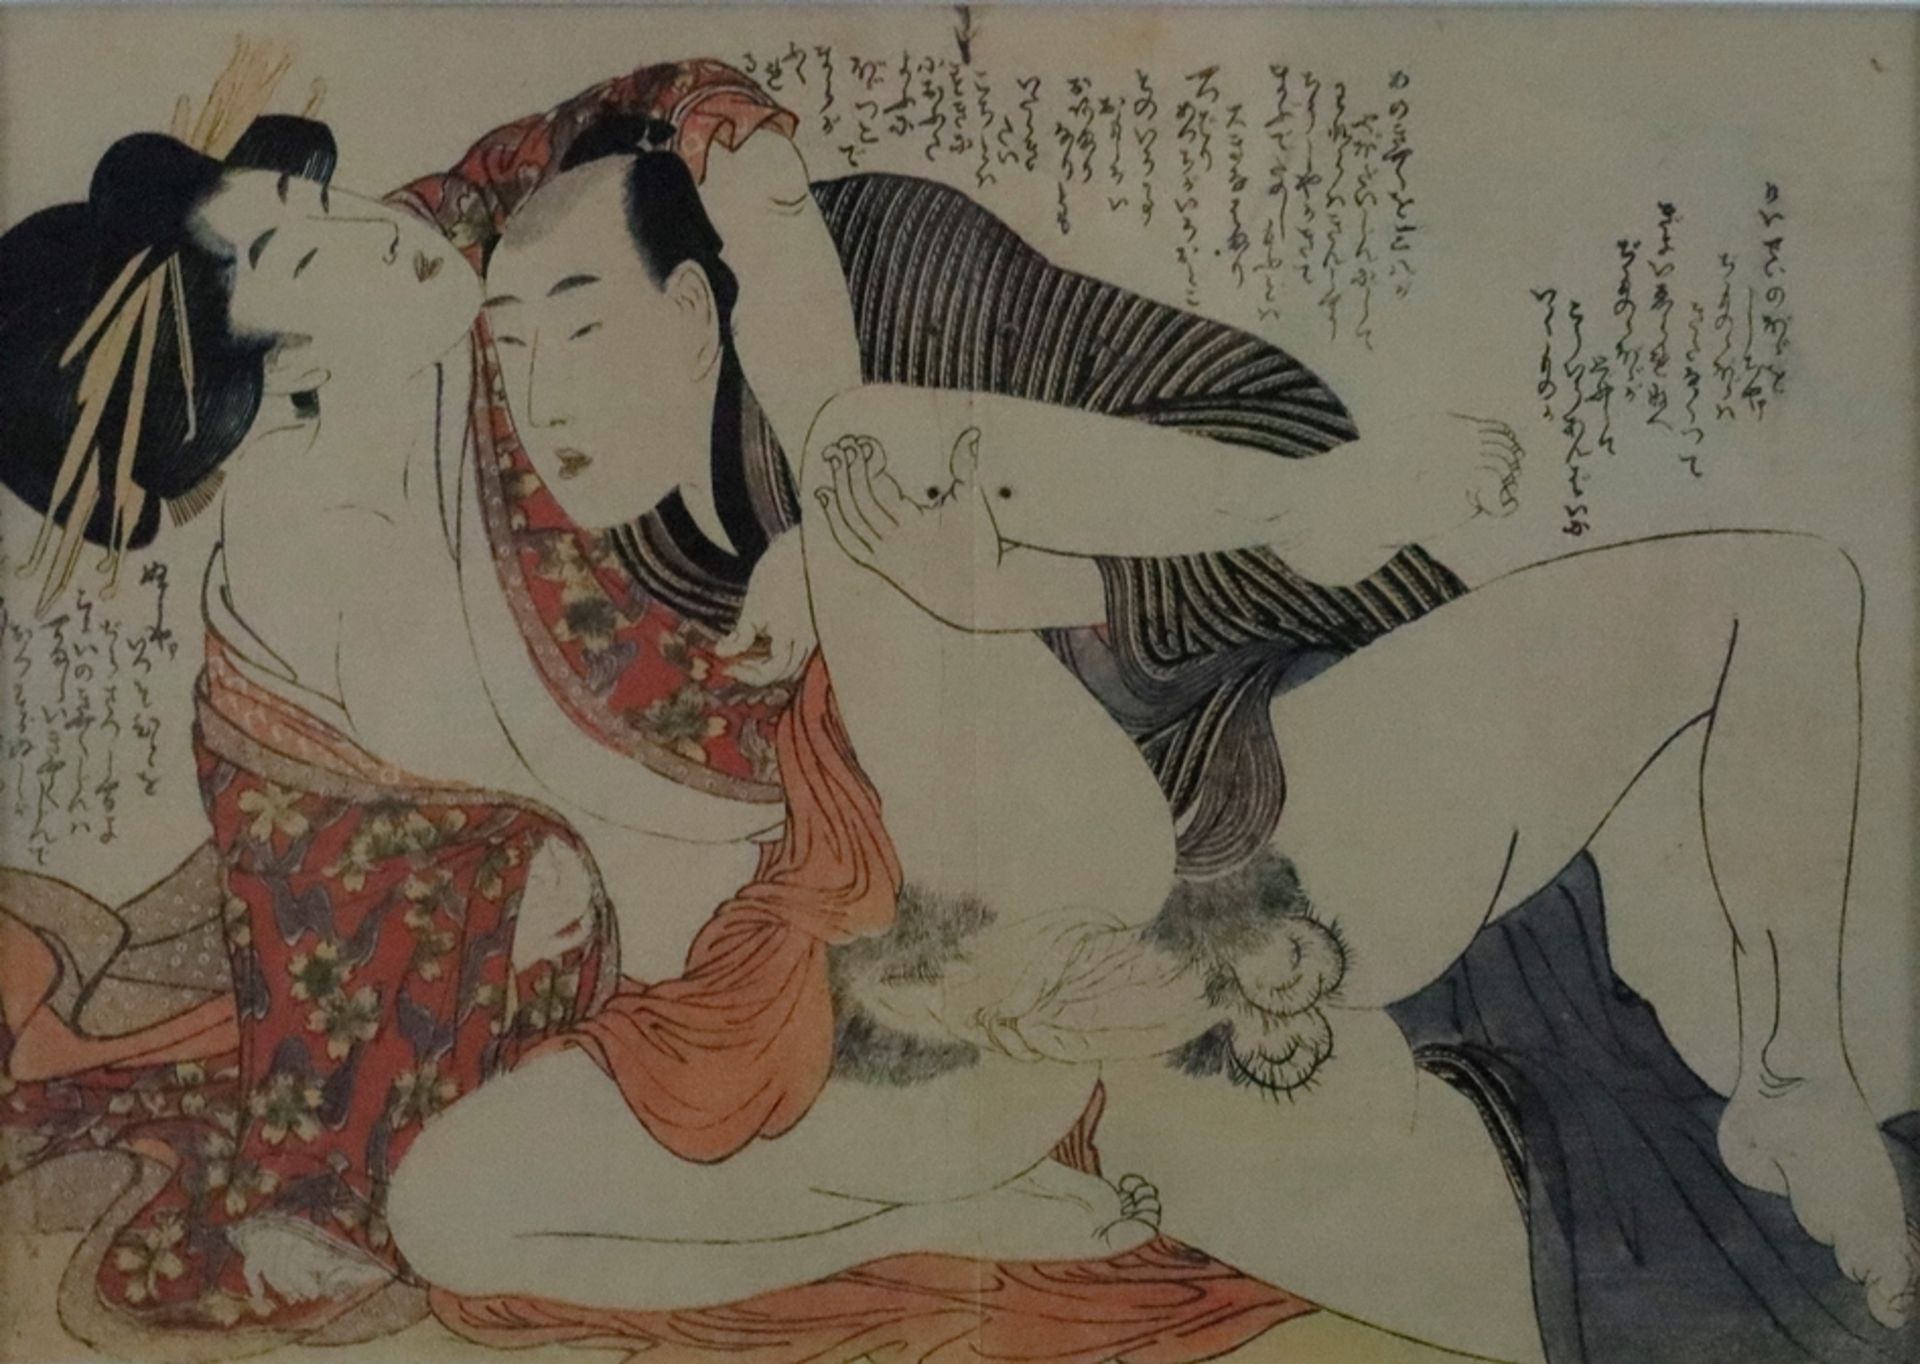 Kitagawa, Utamaro (1753-1806 japanischer Meister des klassischen japanischen Farbholzschnitts, nach